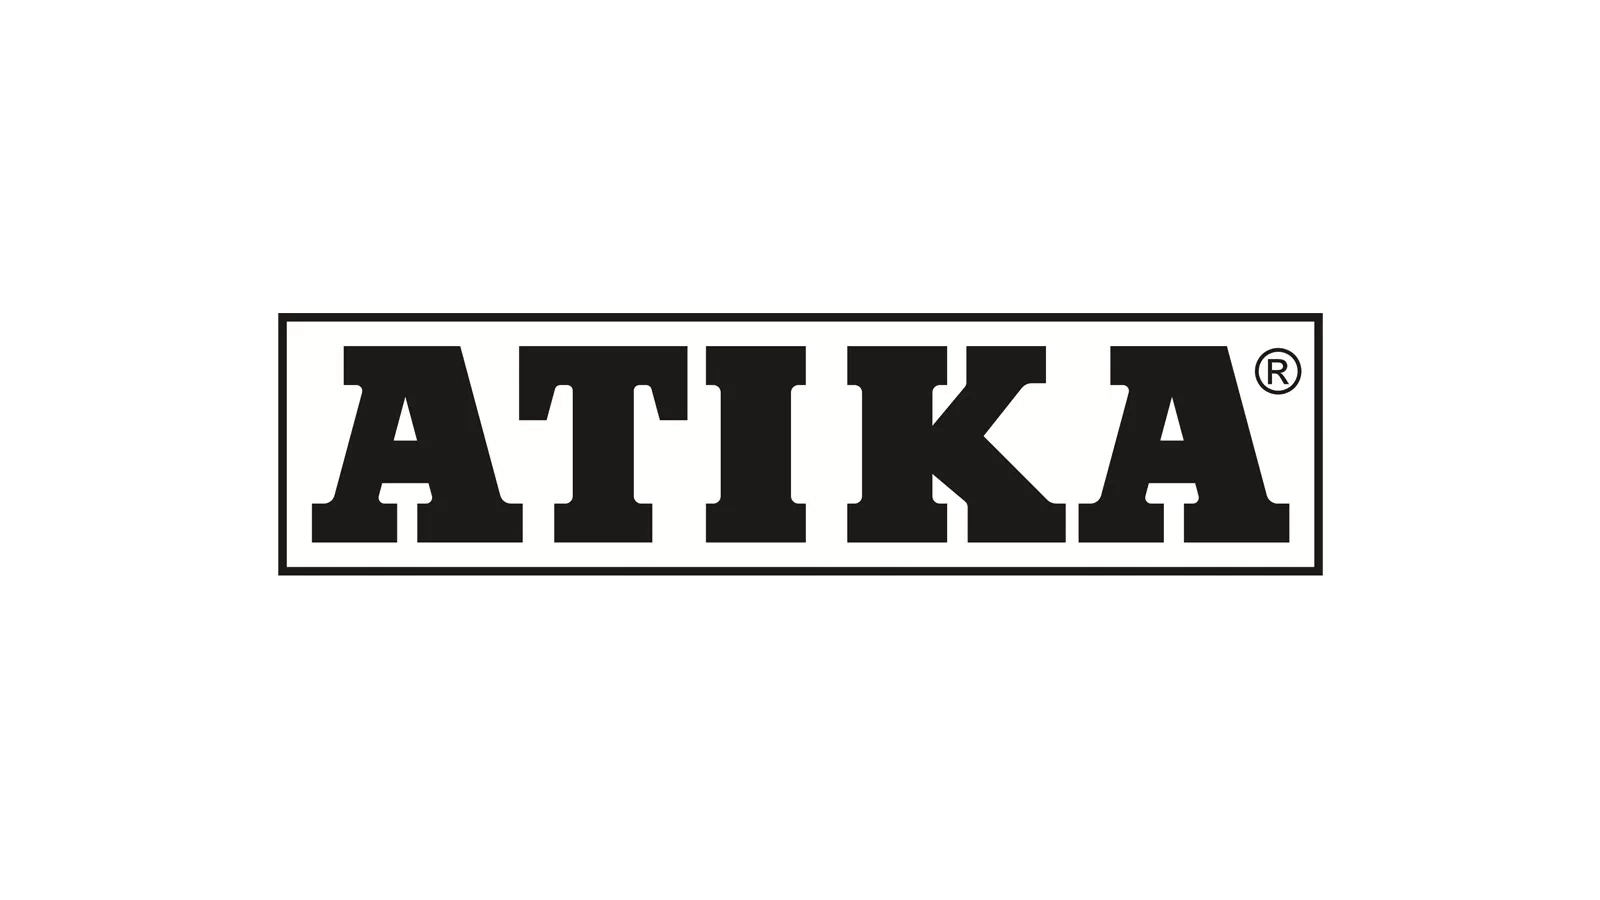 Altrad Lescha Atika GmbH Logo